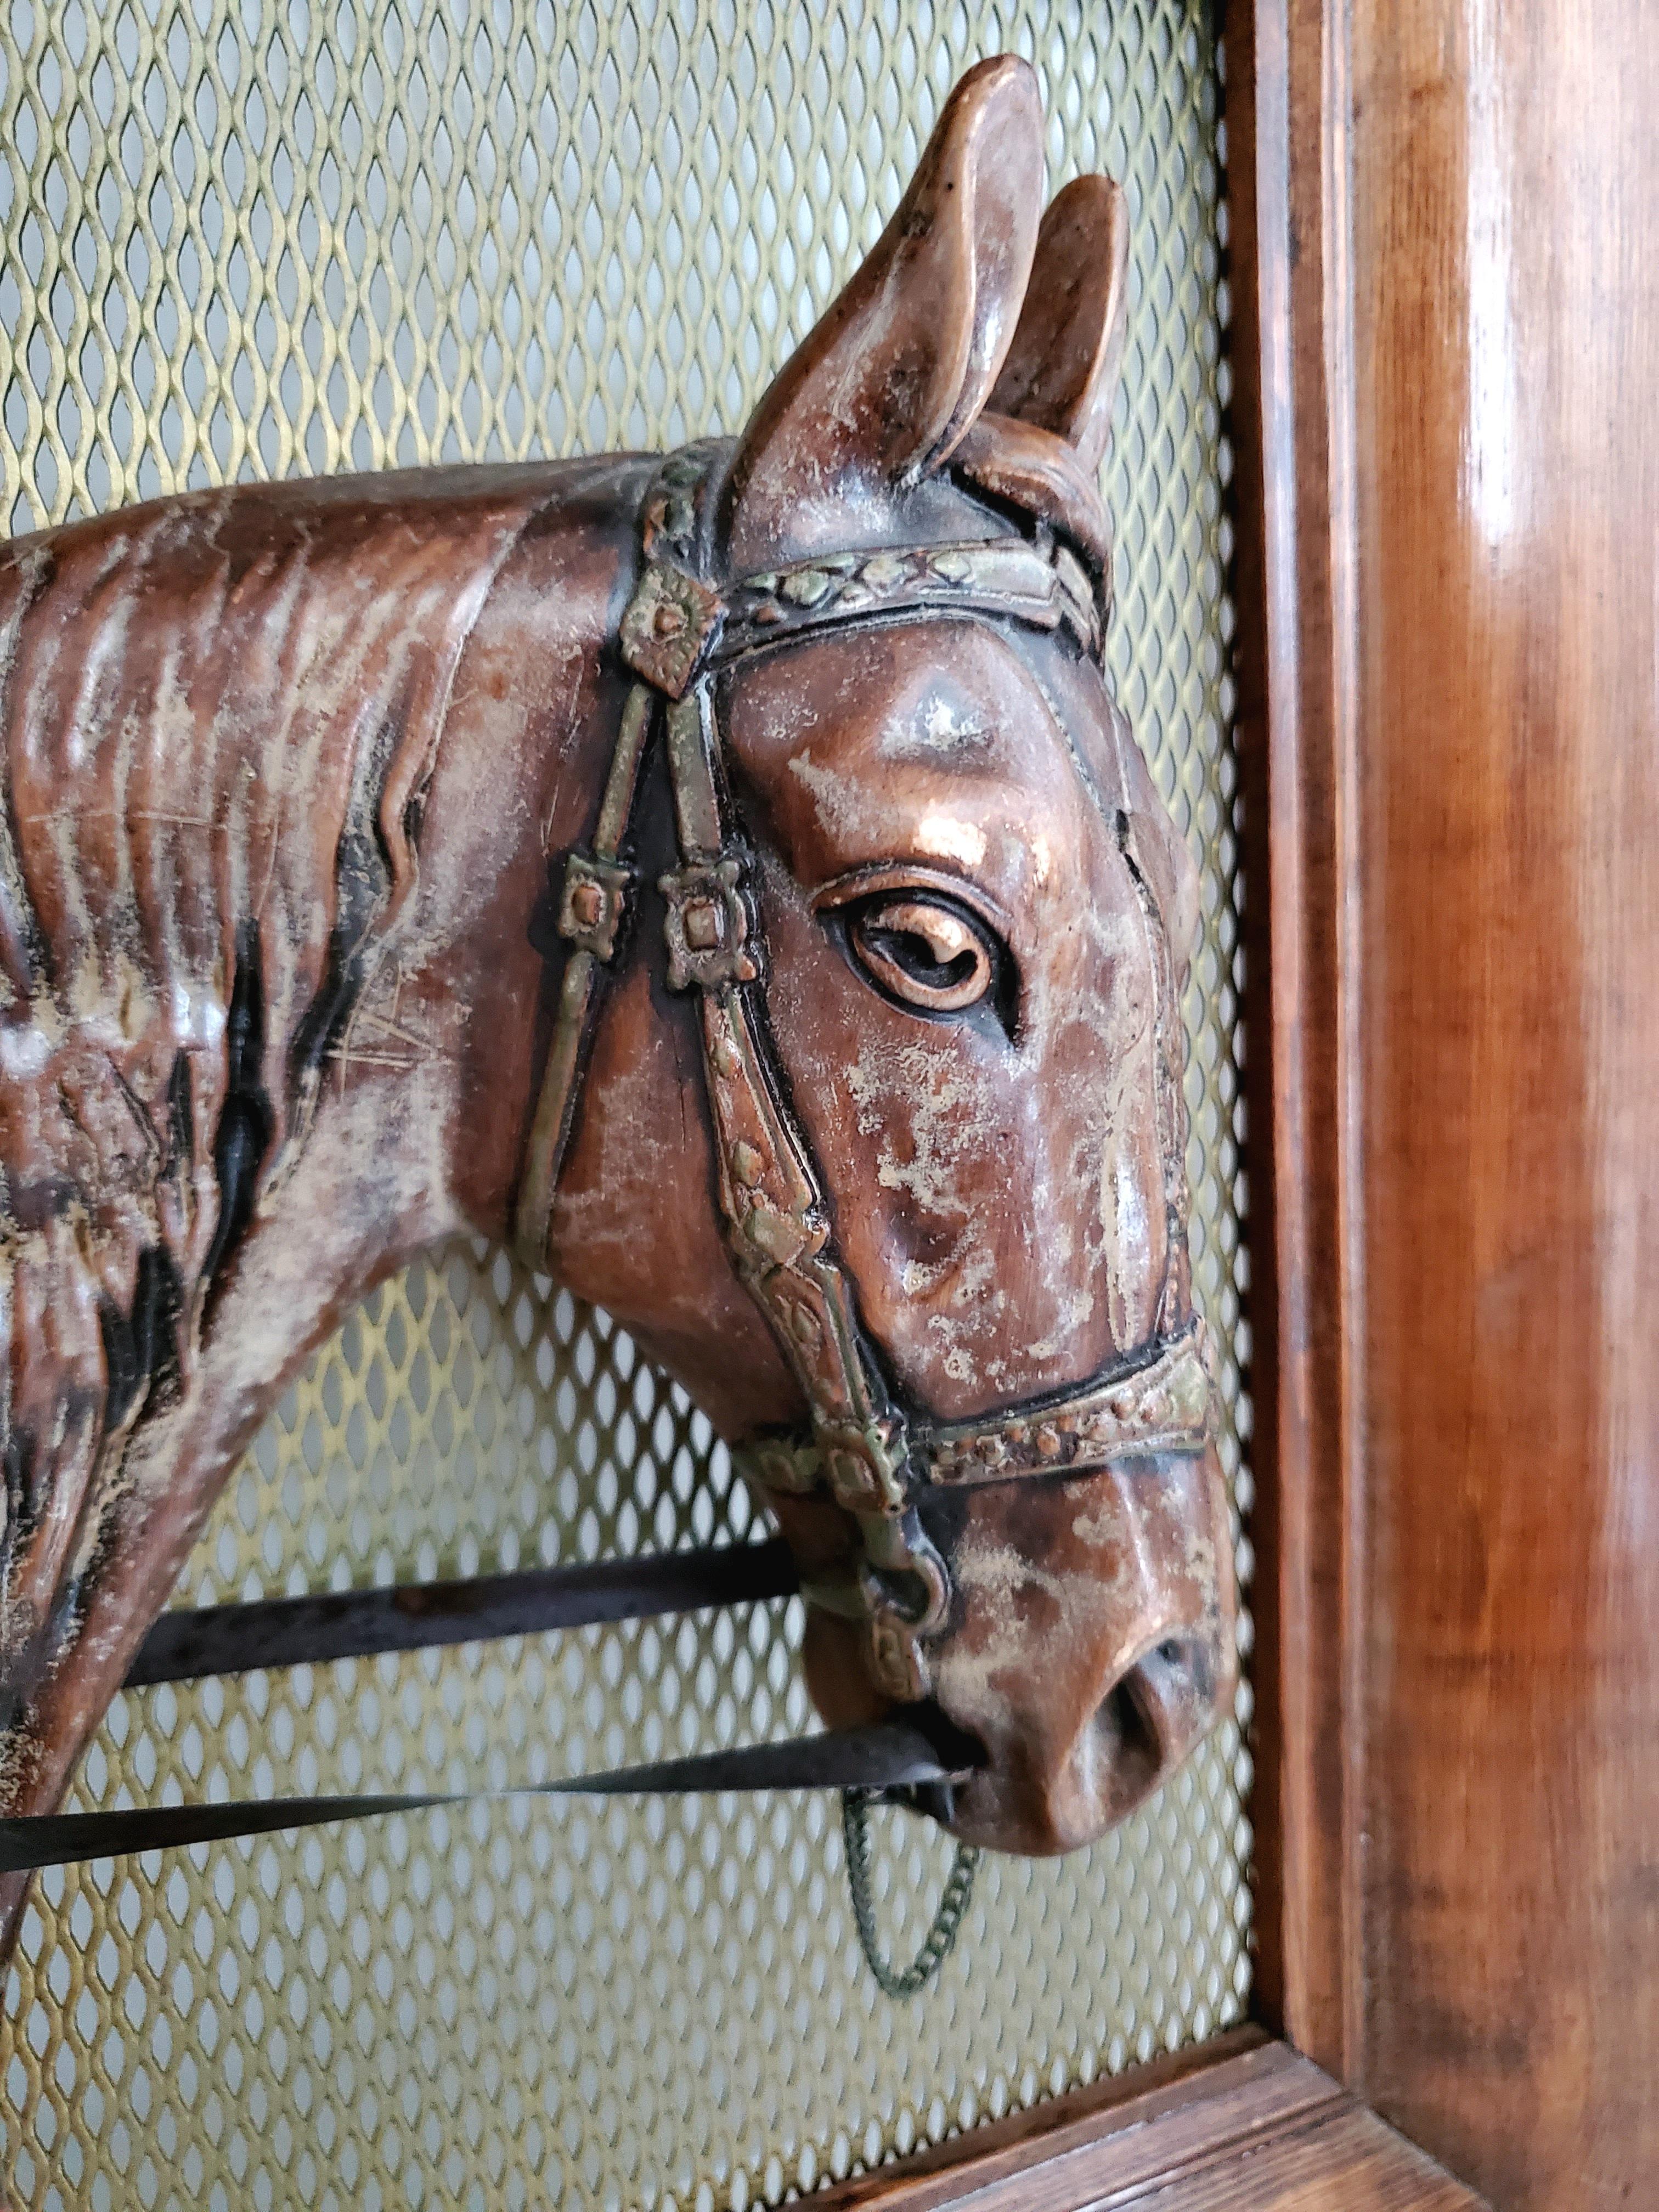 Dies wäre das perfekte Valentinstagsgeschenk für den Pferdesportler oder Pferdeliebhaber.

Diese antike Pferdeskulptur ist ein einzigartiges und spektakuläres Stück aus dem Reitsport. Die Pferdeskulptur ist aus Kupfer gegossen und wird montiert und